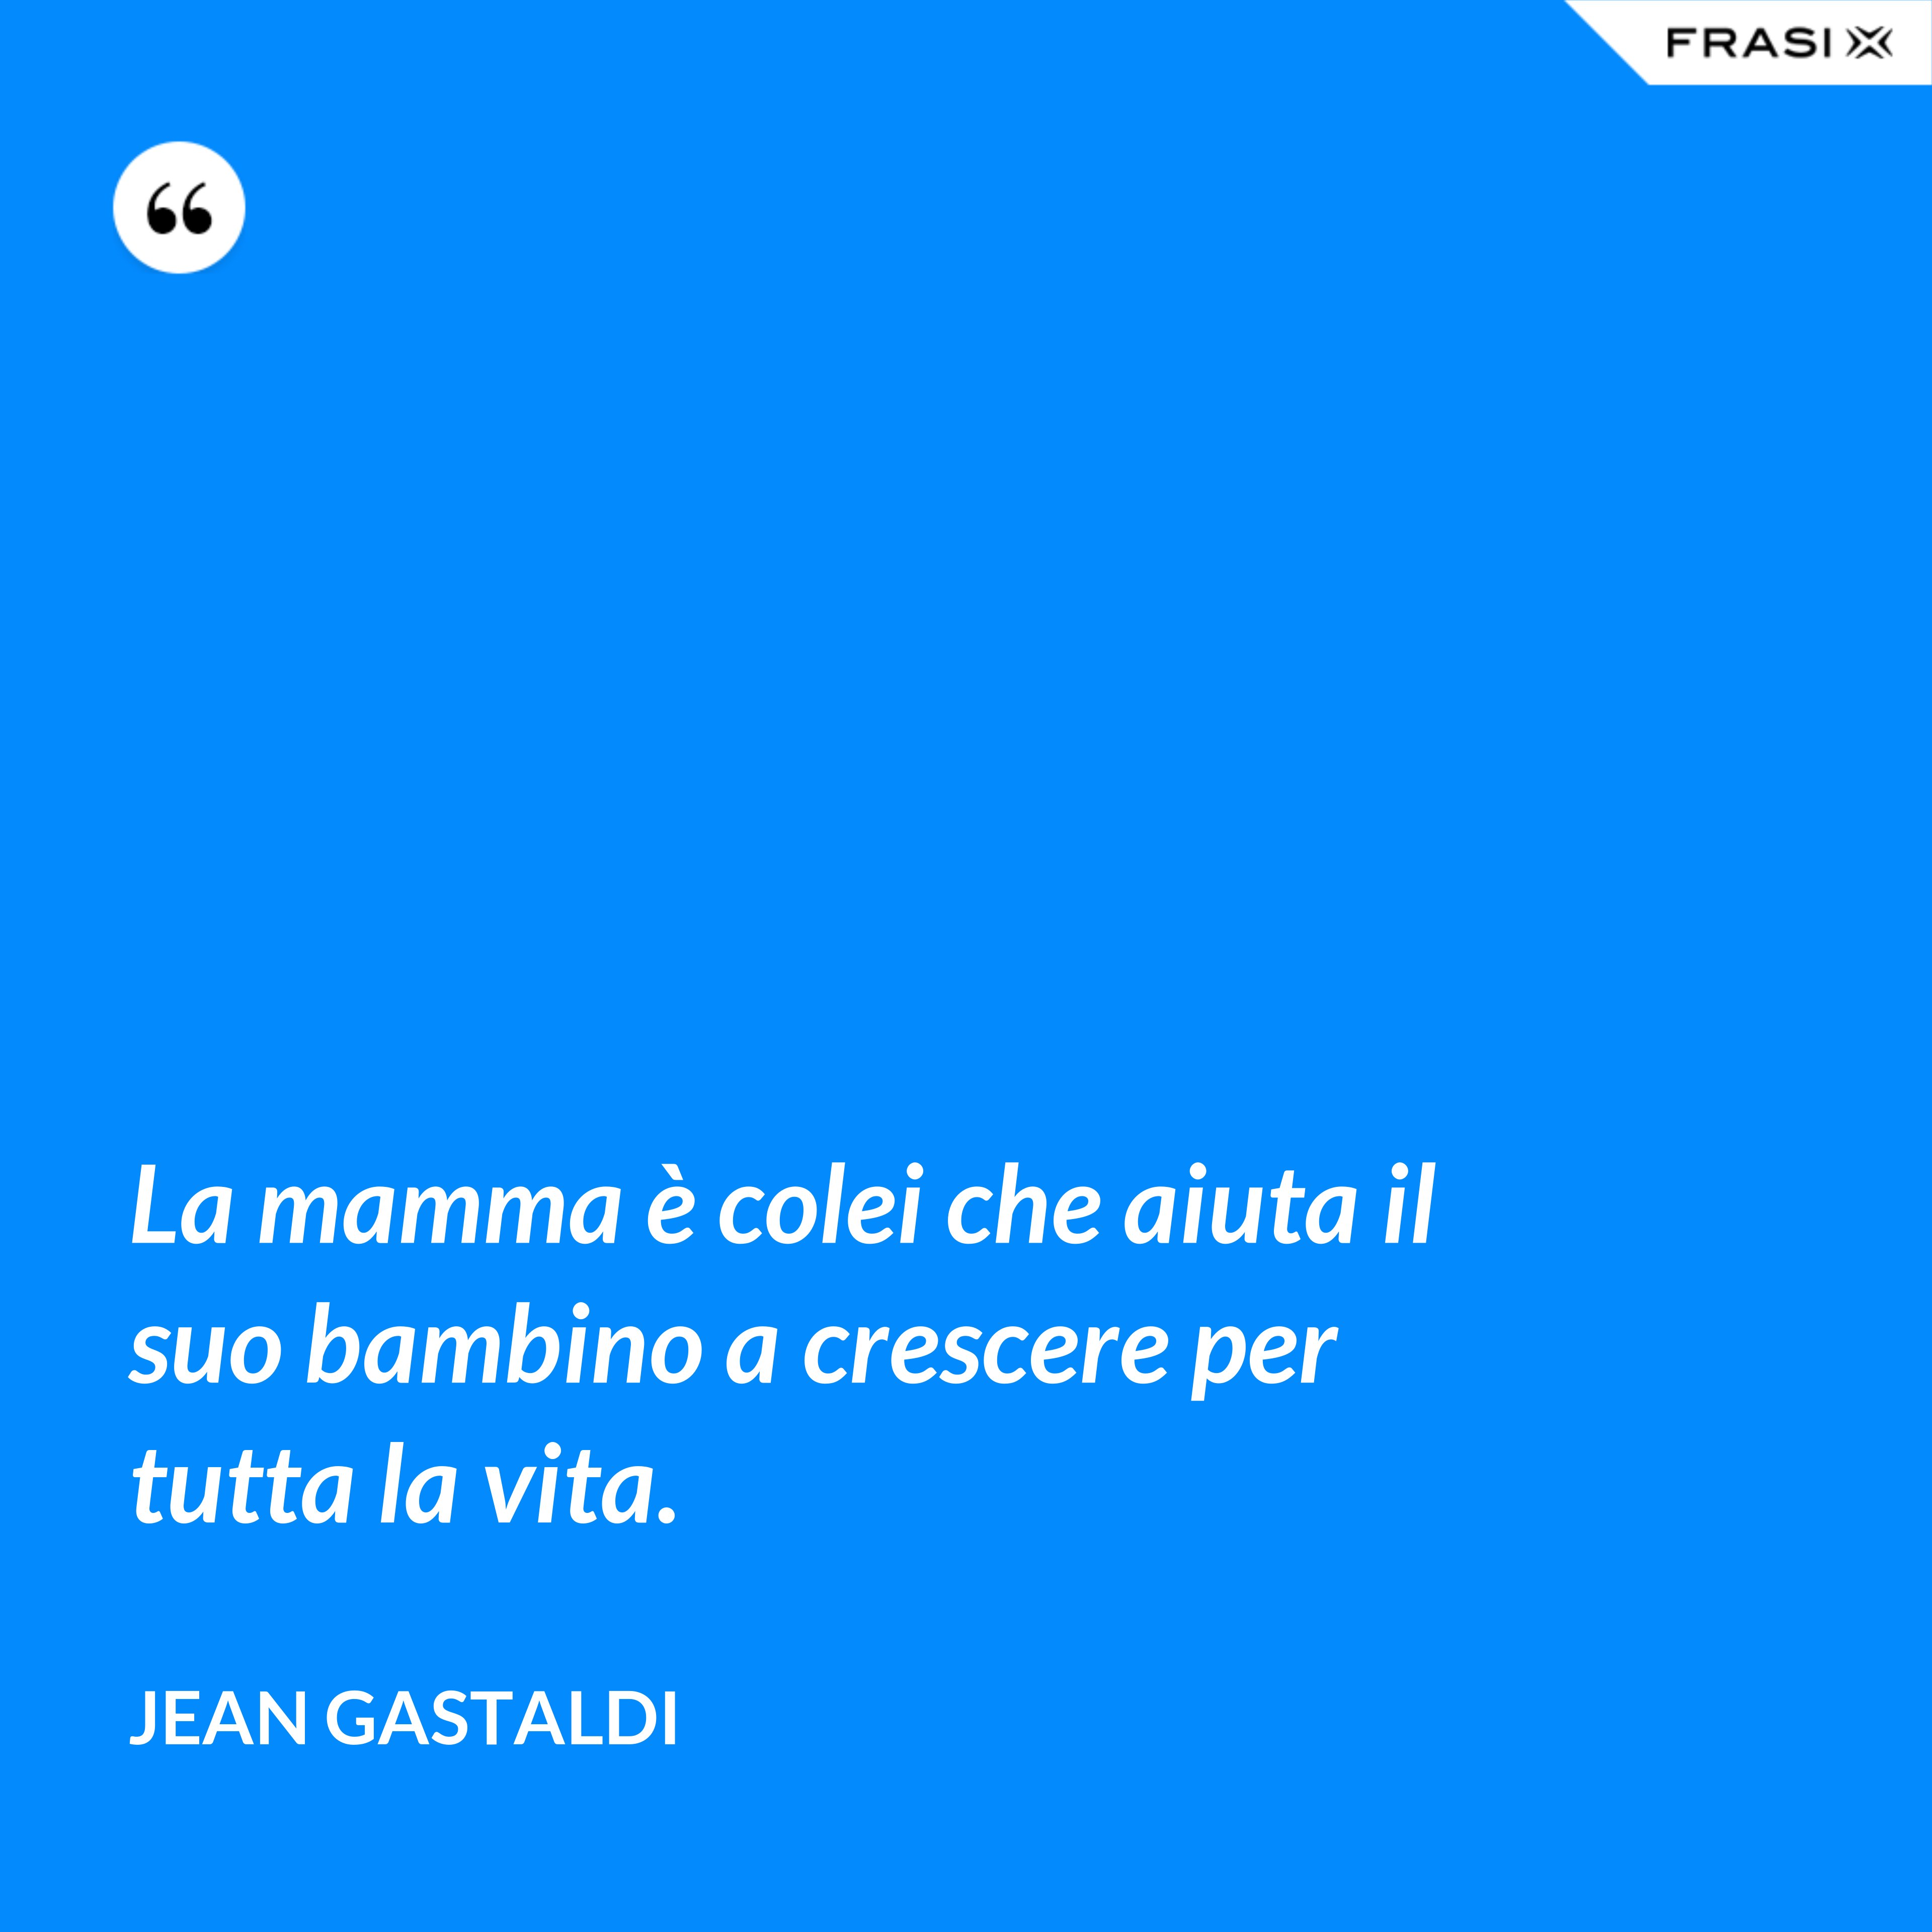 La mamma è colei che aiuta il suo bambino a crescere per tutta la vita. - Jean Gastaldi